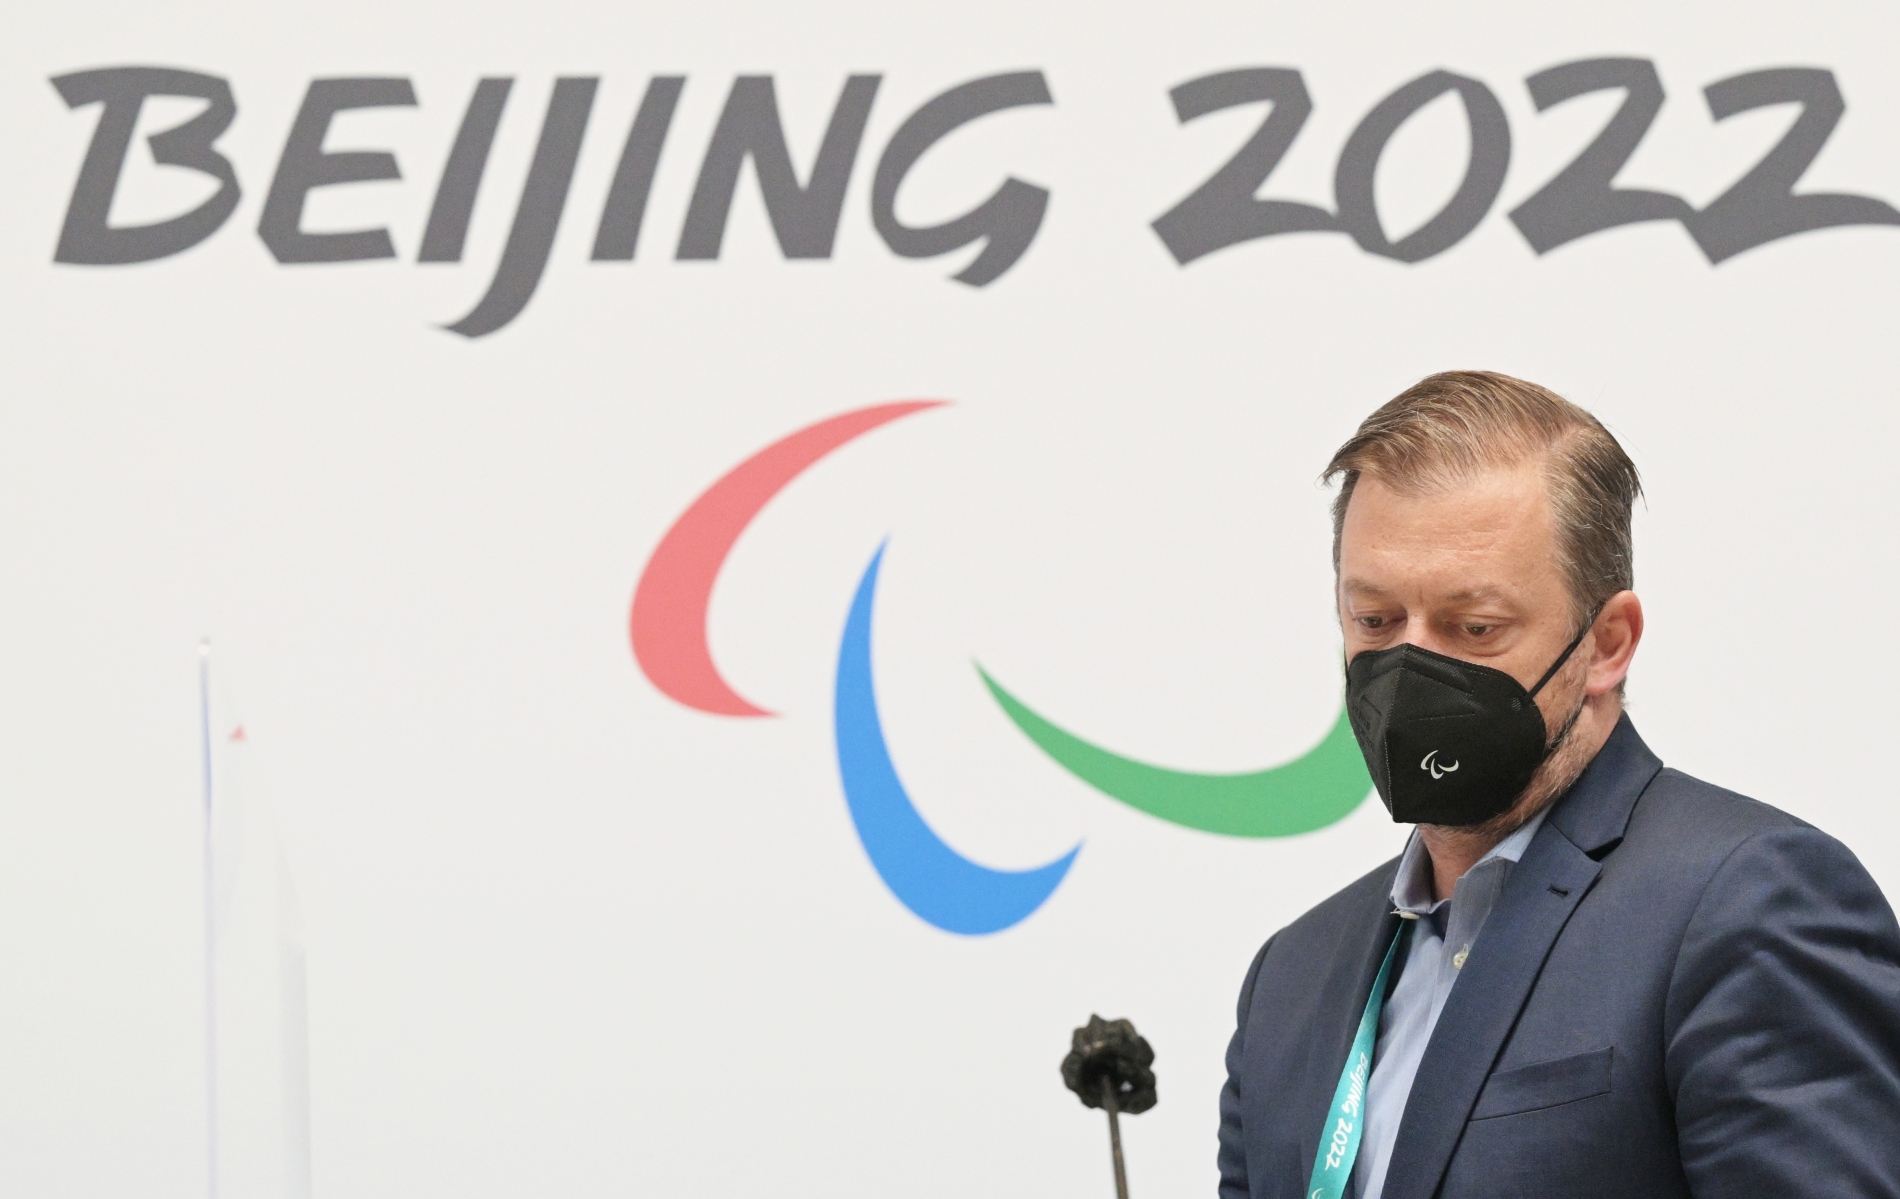 Международный паралимпийский комитет запретил российским и белорусским спортсменам участвовать в Паралимпиаде